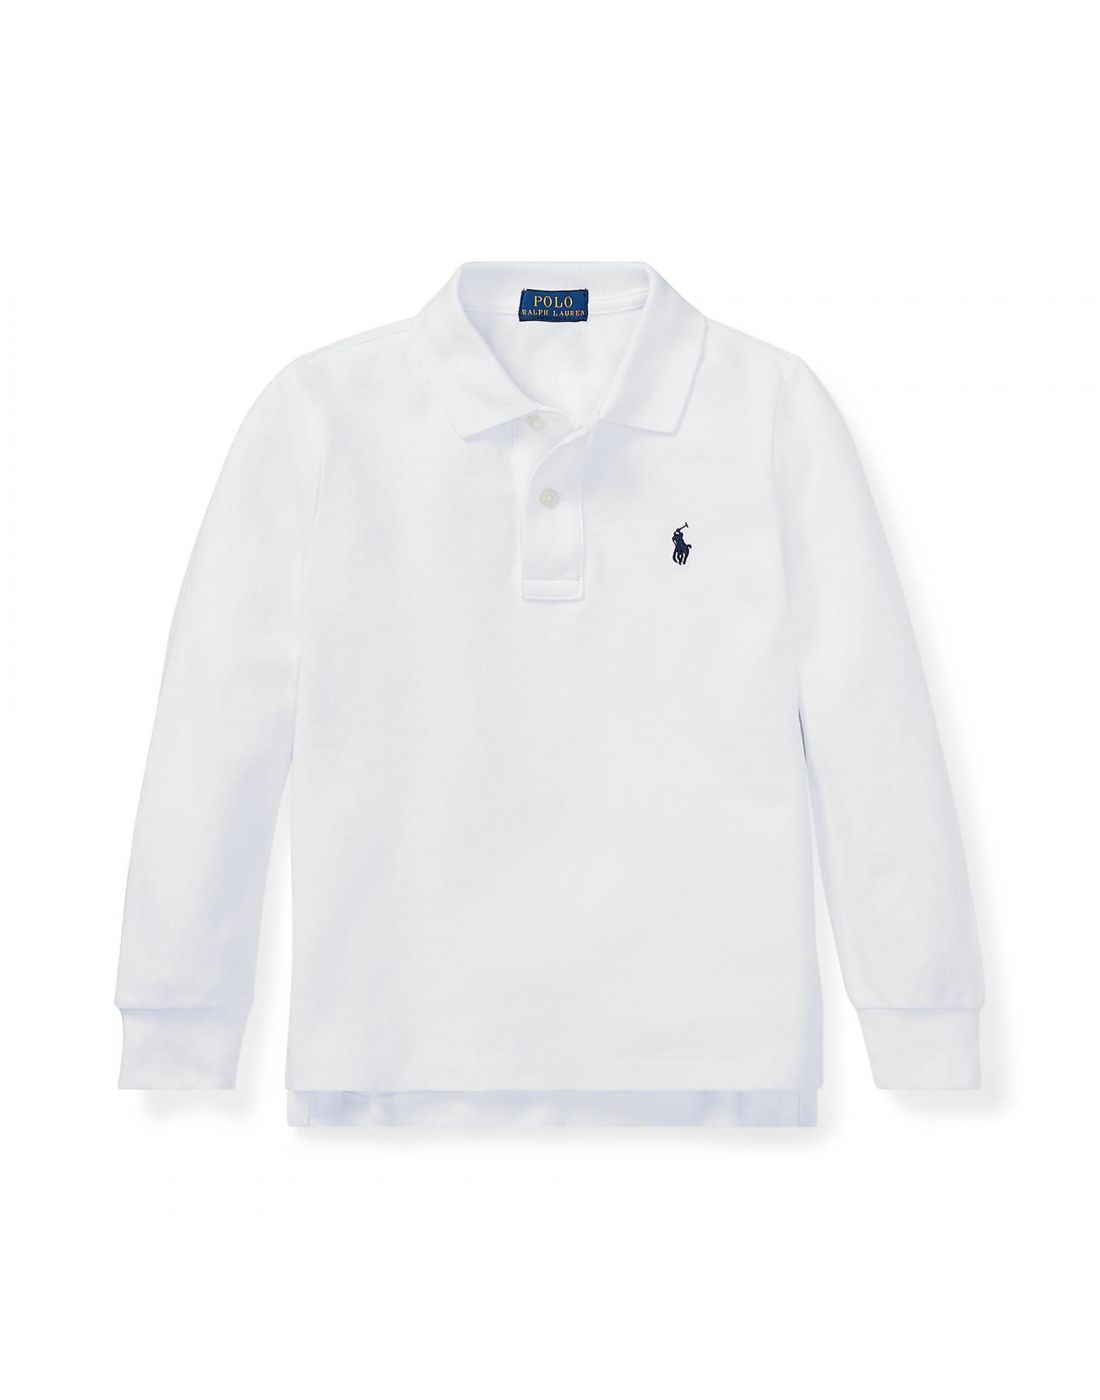 Παιδική Μπλούζα Polo Ralph Lauren, Polo Ralph Lauren, 100R0037 |  LapinKids.com | LAPIN KIDS